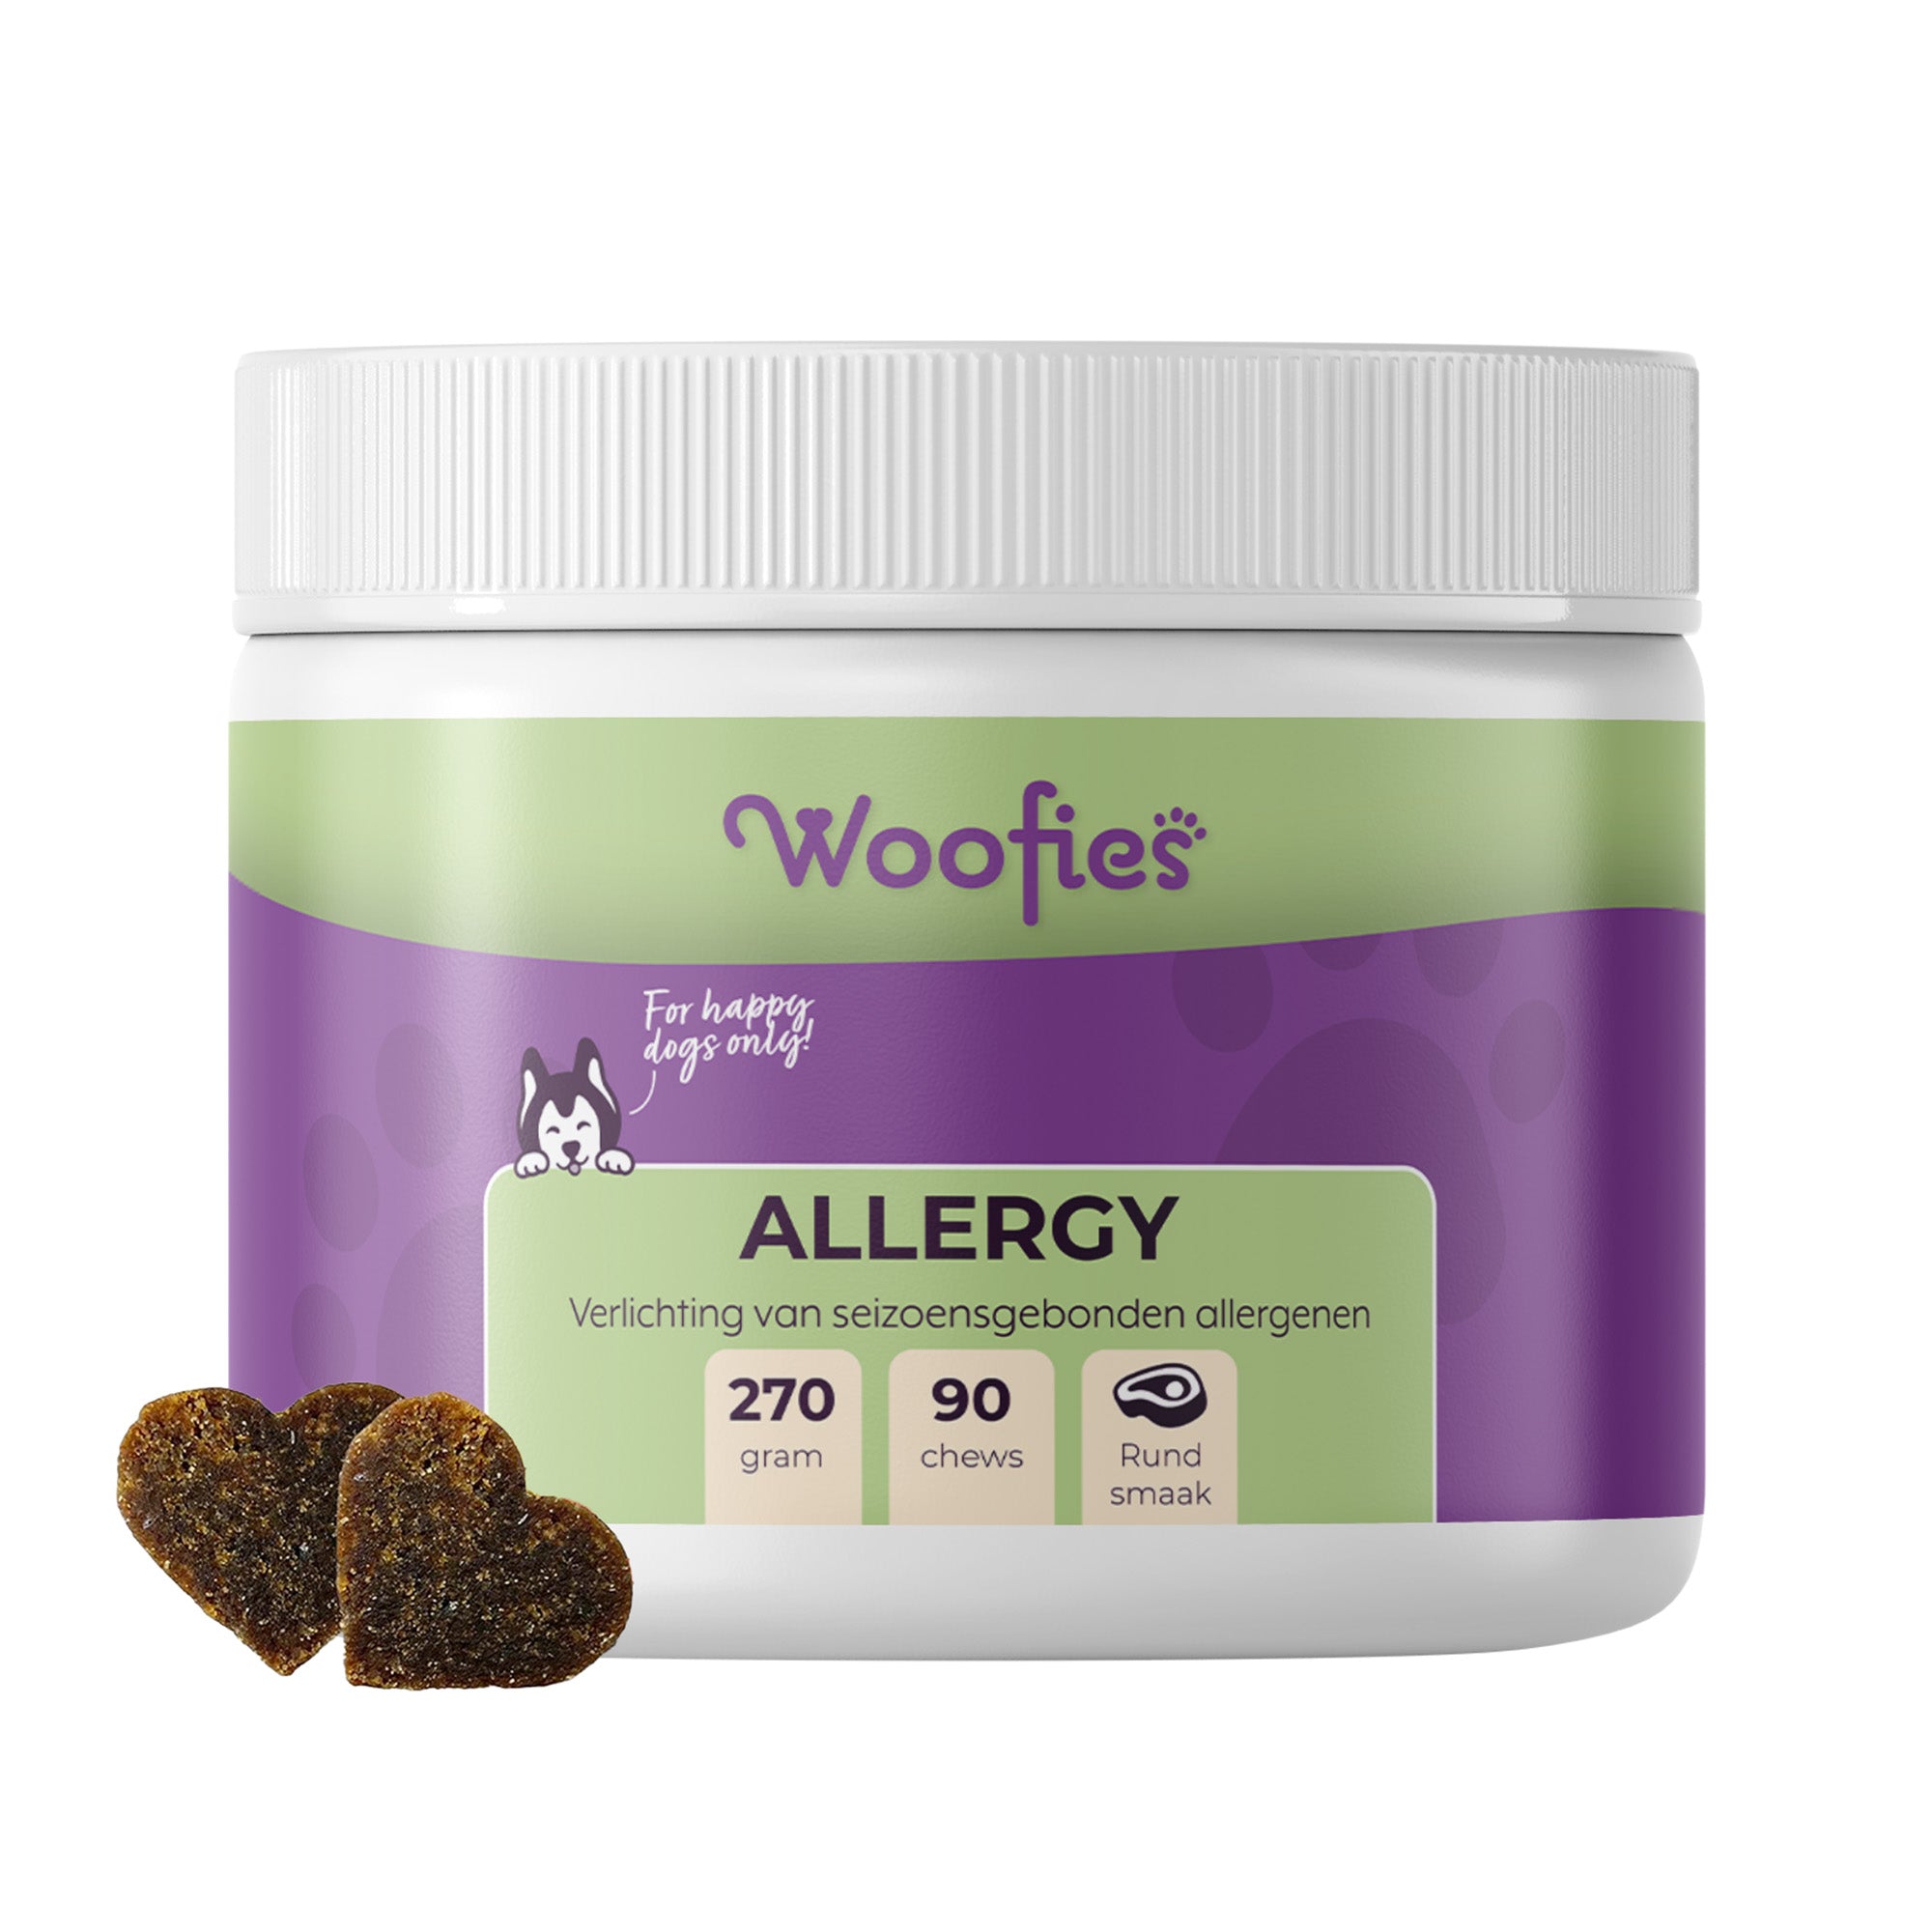 Woofies Allergy Support Hondensnoepjes verpakking, natuurlijke ingrediënten voor allergie en jeukverlichting.